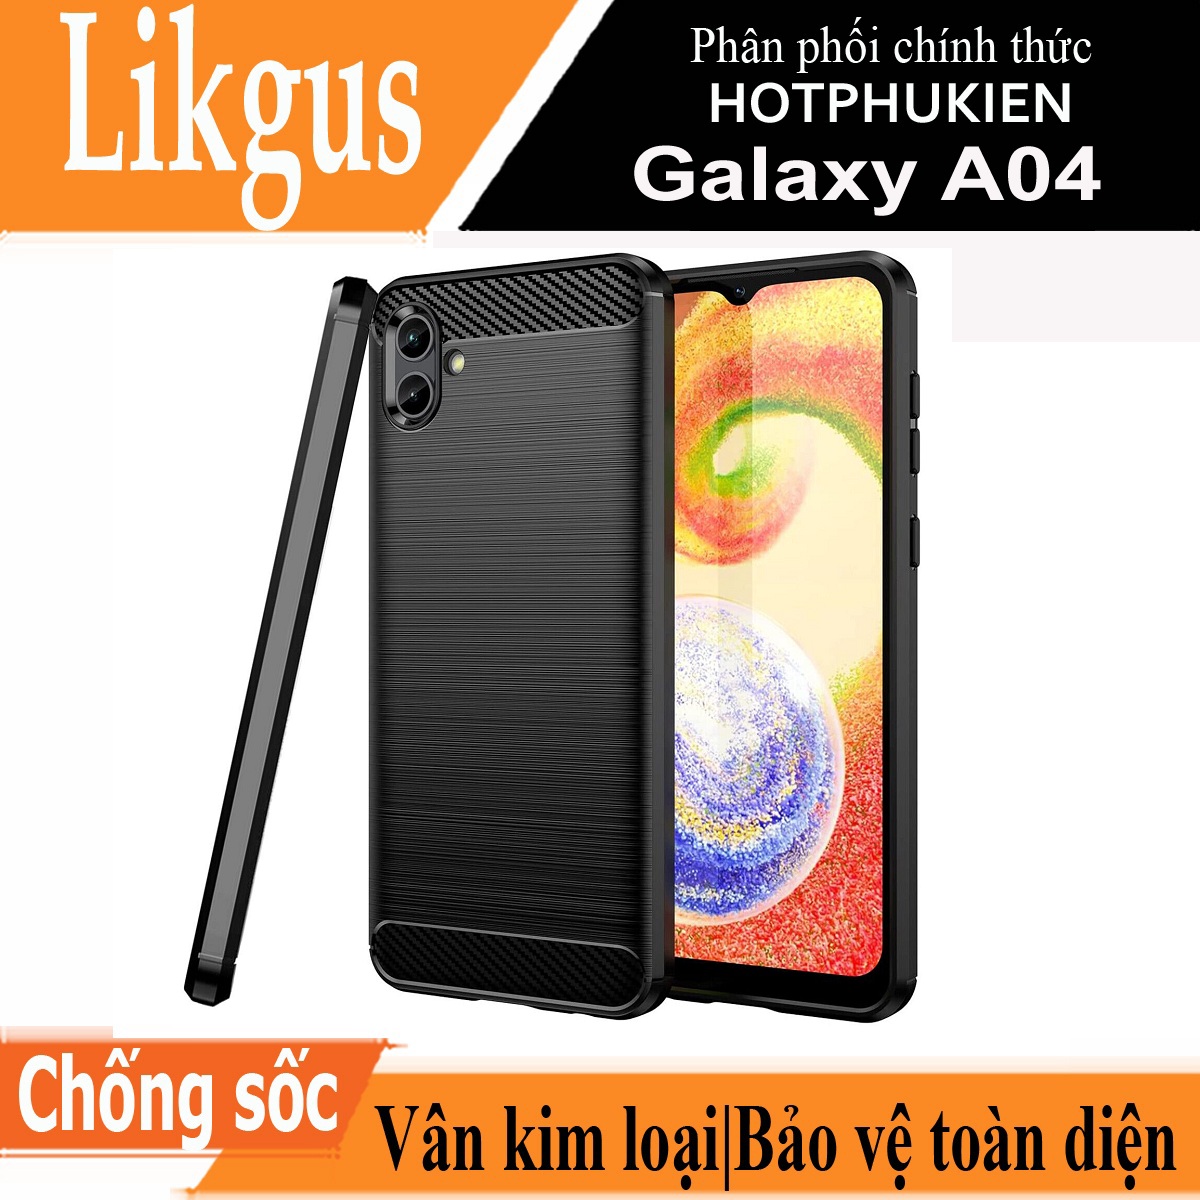 Ốp lưng chống sốc vân kim loại cho Samsung Galaxy A04 hiệu Likgus